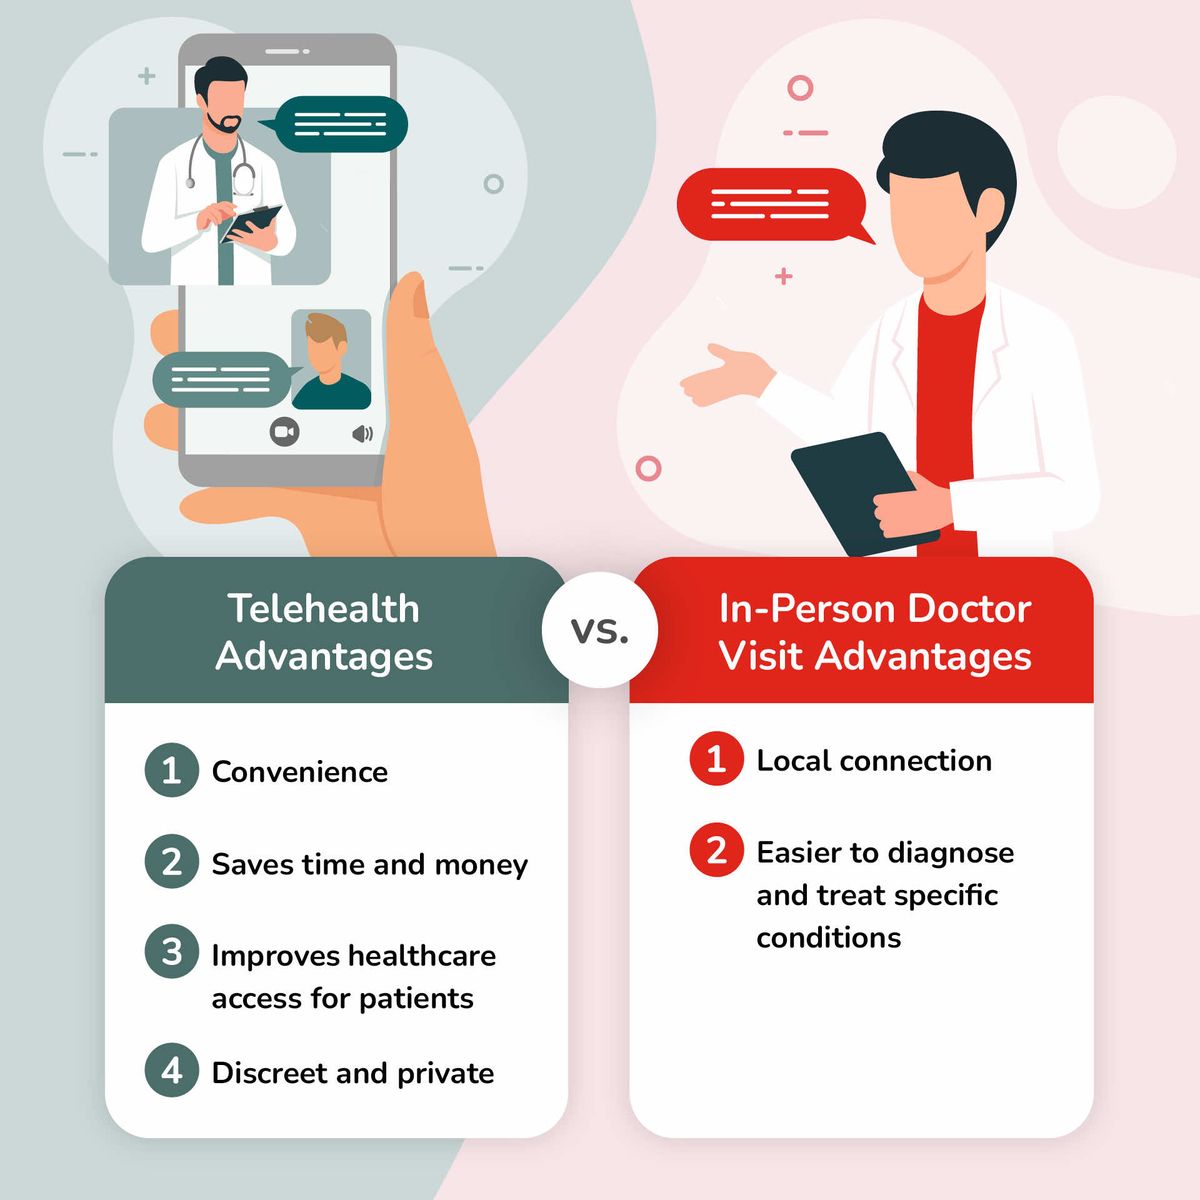 Telehealth Advantages vs. In-Person Doctor Visit Advantages Comparison